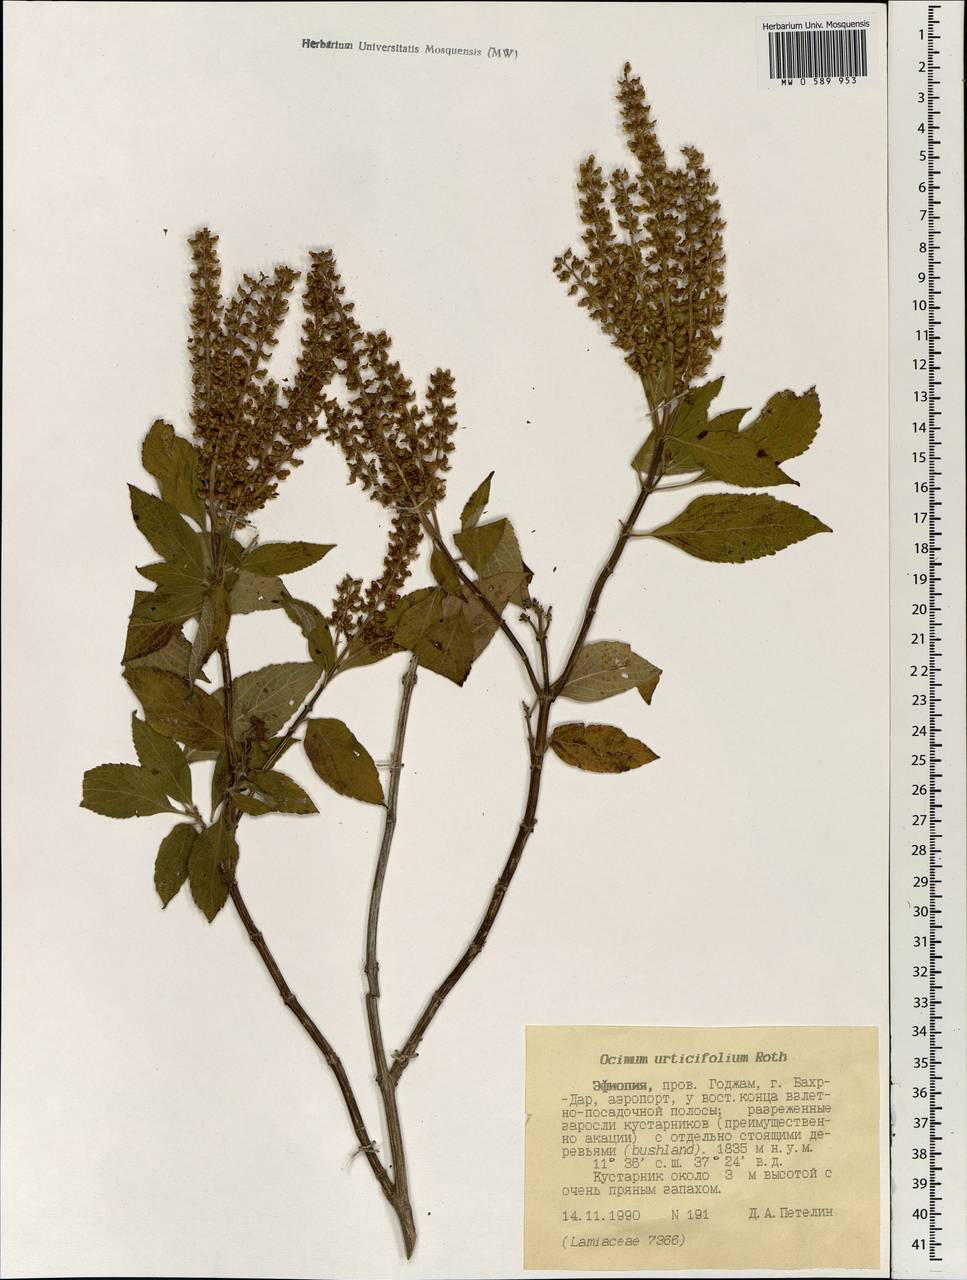 Ocimum basilicum L., Africa (AFR) (Ethiopia)